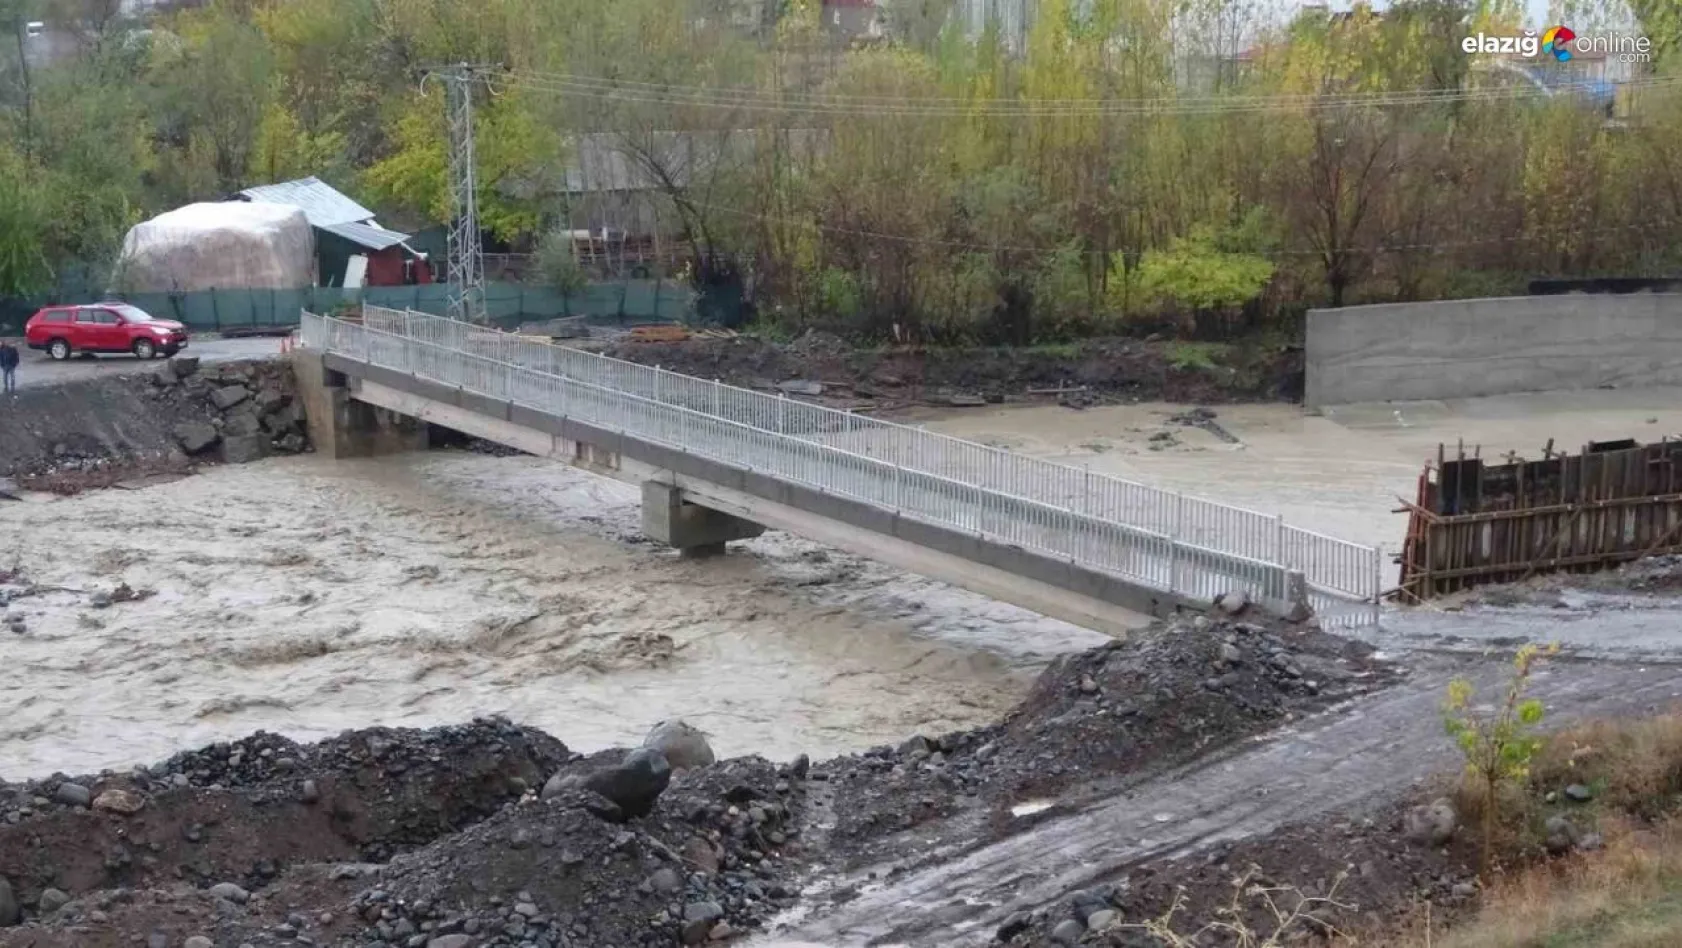 Bingöl'de yaya köprüsü, geçici olarak kapatıldı